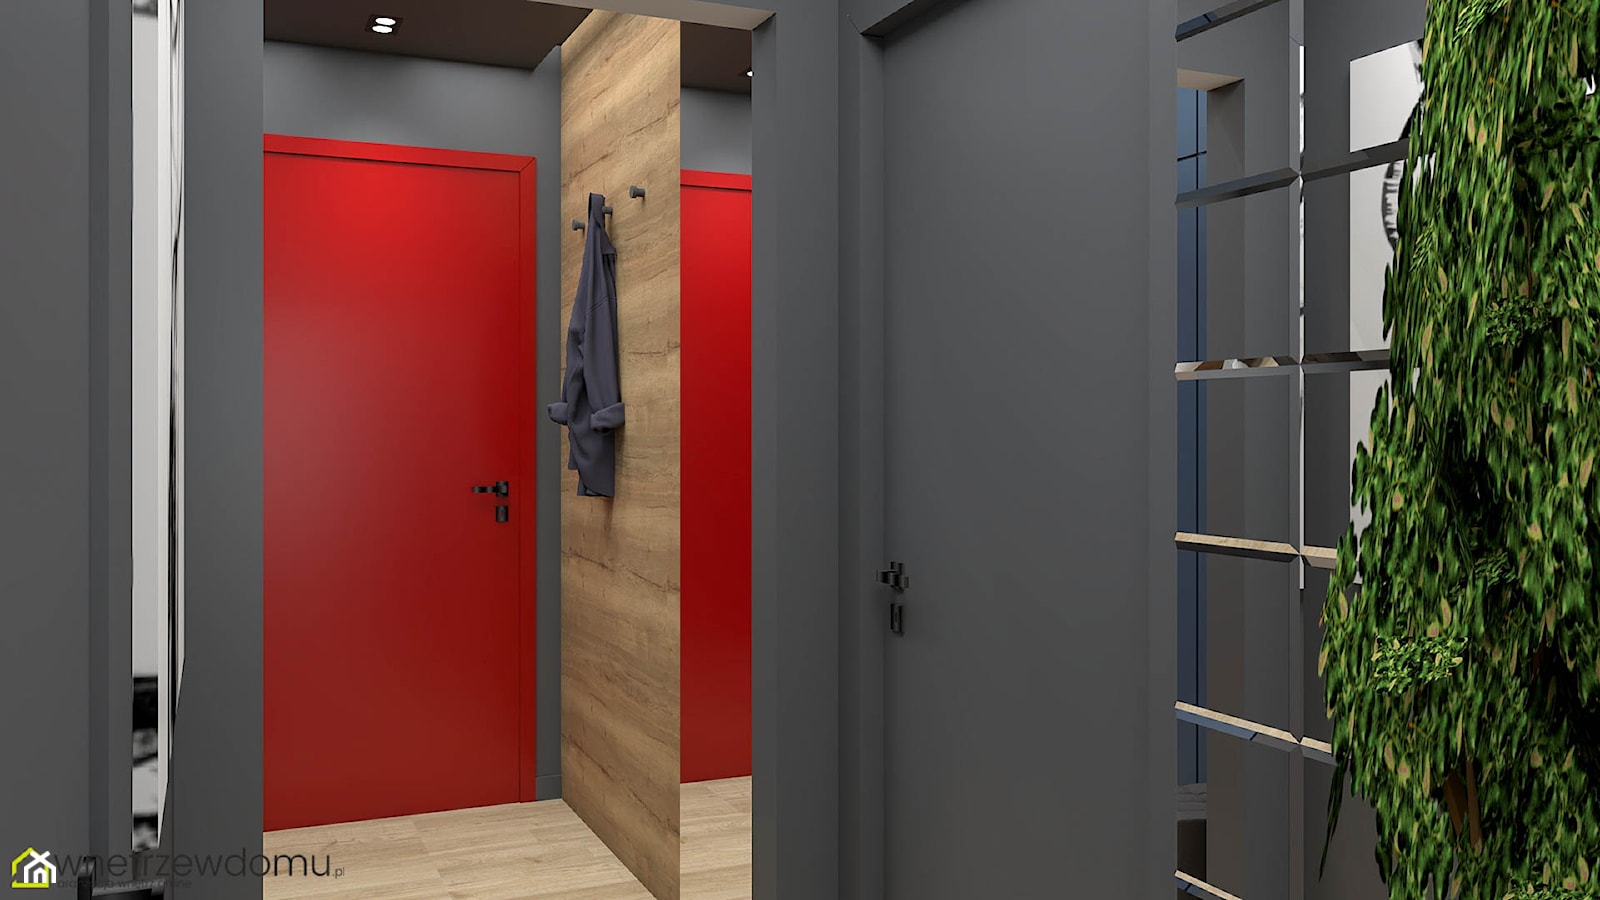 Nowoczesny hol z czerwonymi drzwiami - zdjęcie od wnetrzewdomu - Homebook